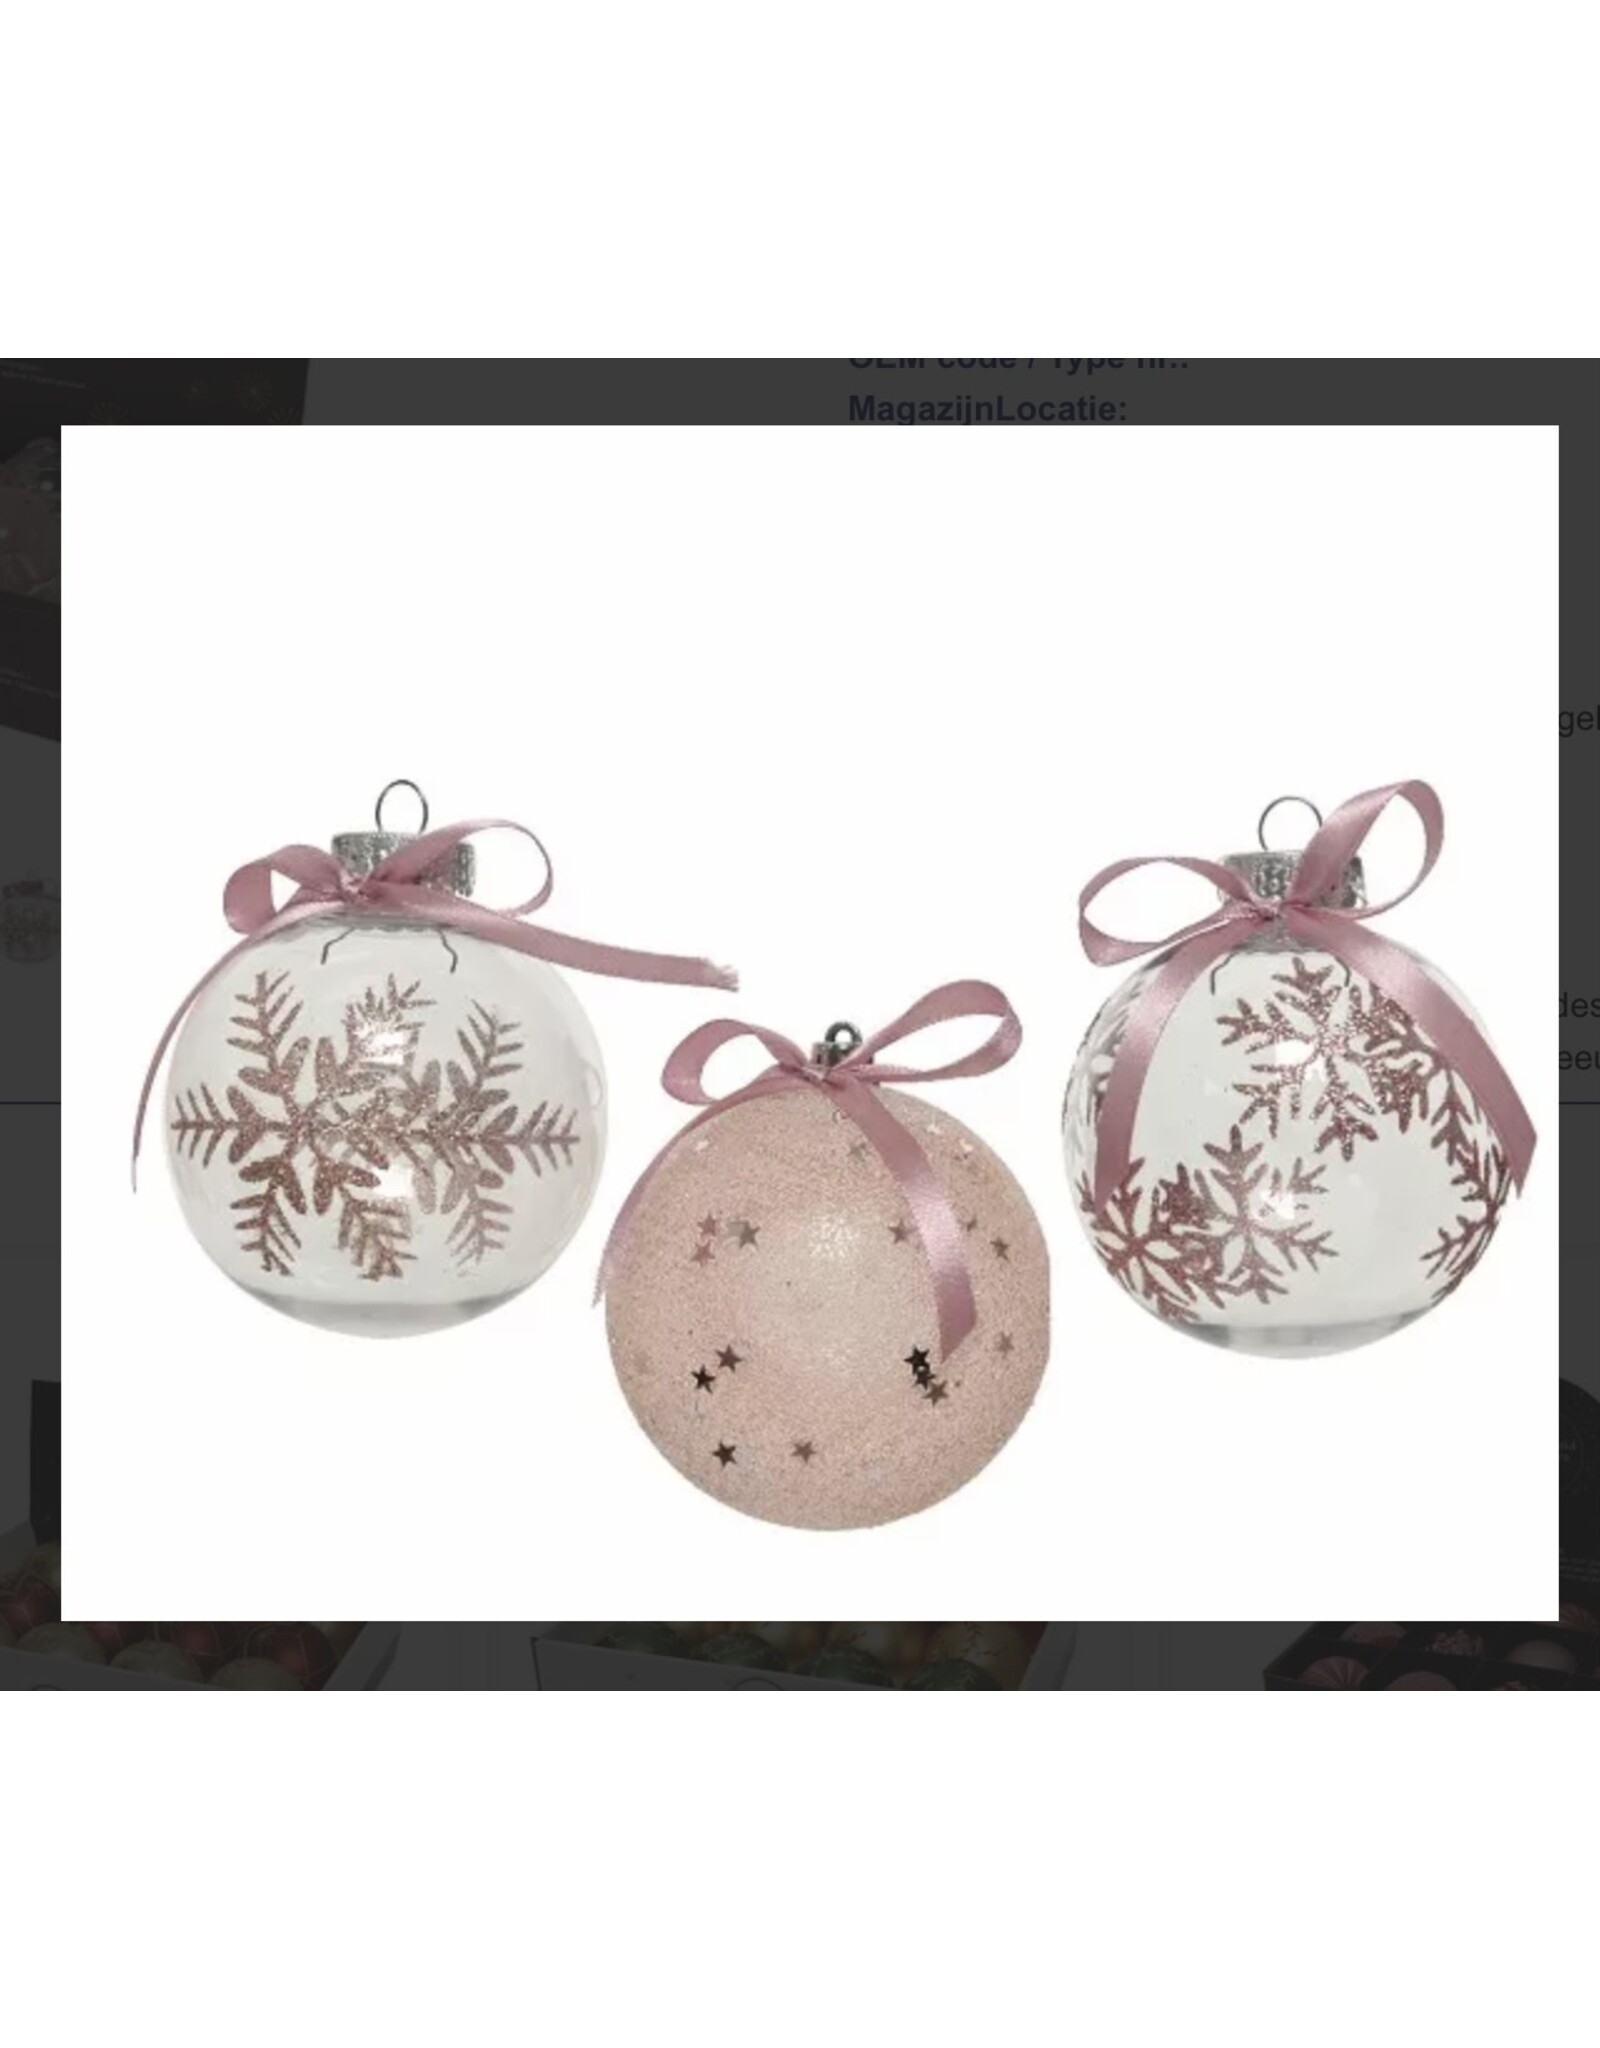 Decoris Decoris Kerstballen van kunststof 3 assorti kleuren  blush pink